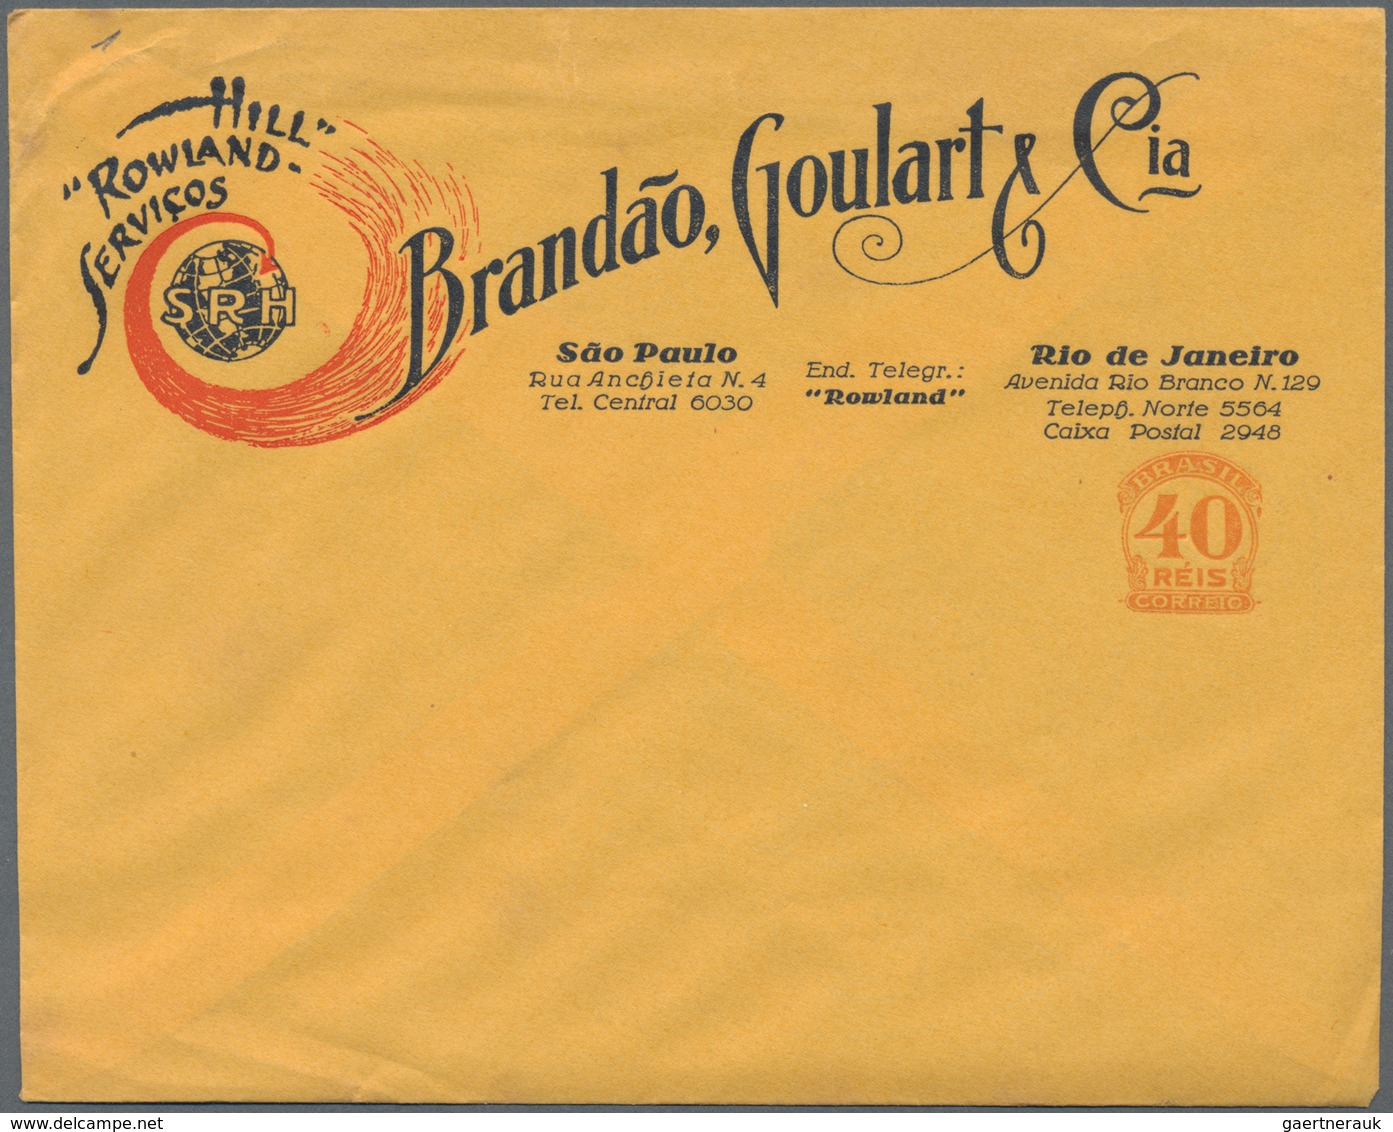 Brasilien - Ganzsachen: 1927, Stationery Advertising Letter 40 Reis "Hill Rowland Servicio Brandao, - Ganzsachen